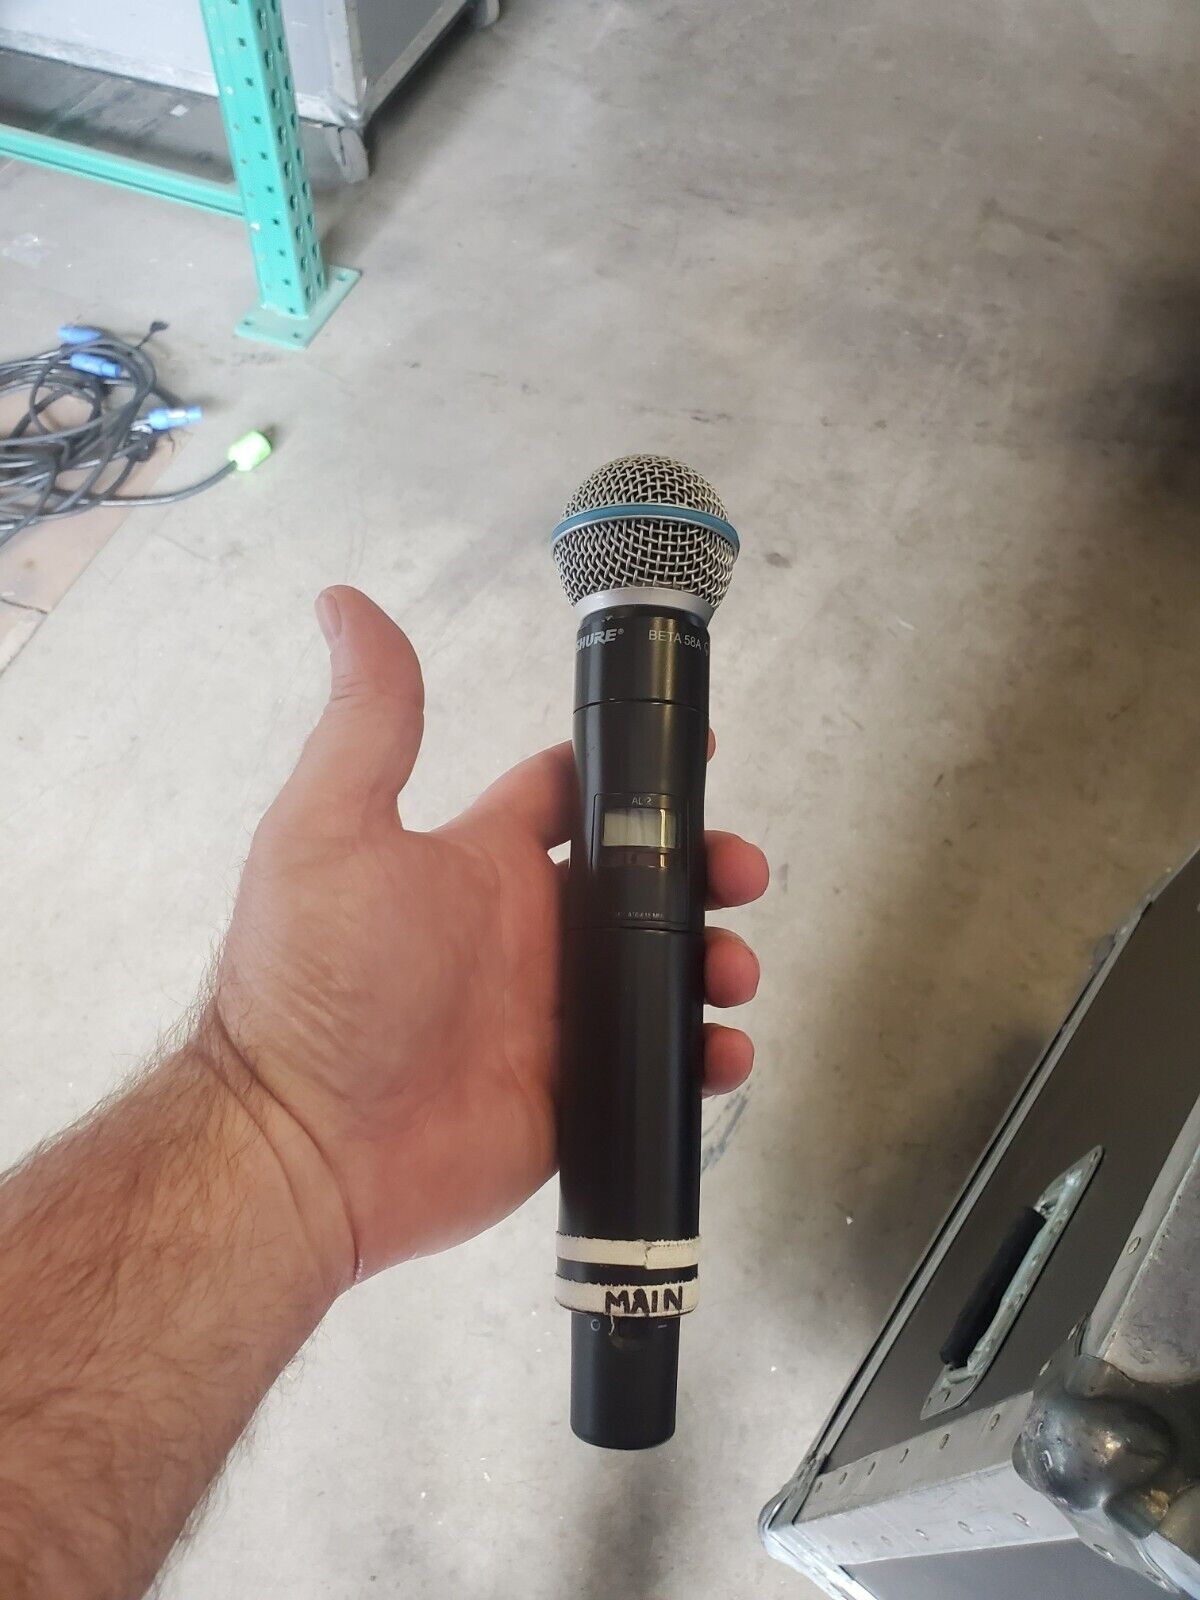 Microfone que Cardi B teria jogado em mulher durante show